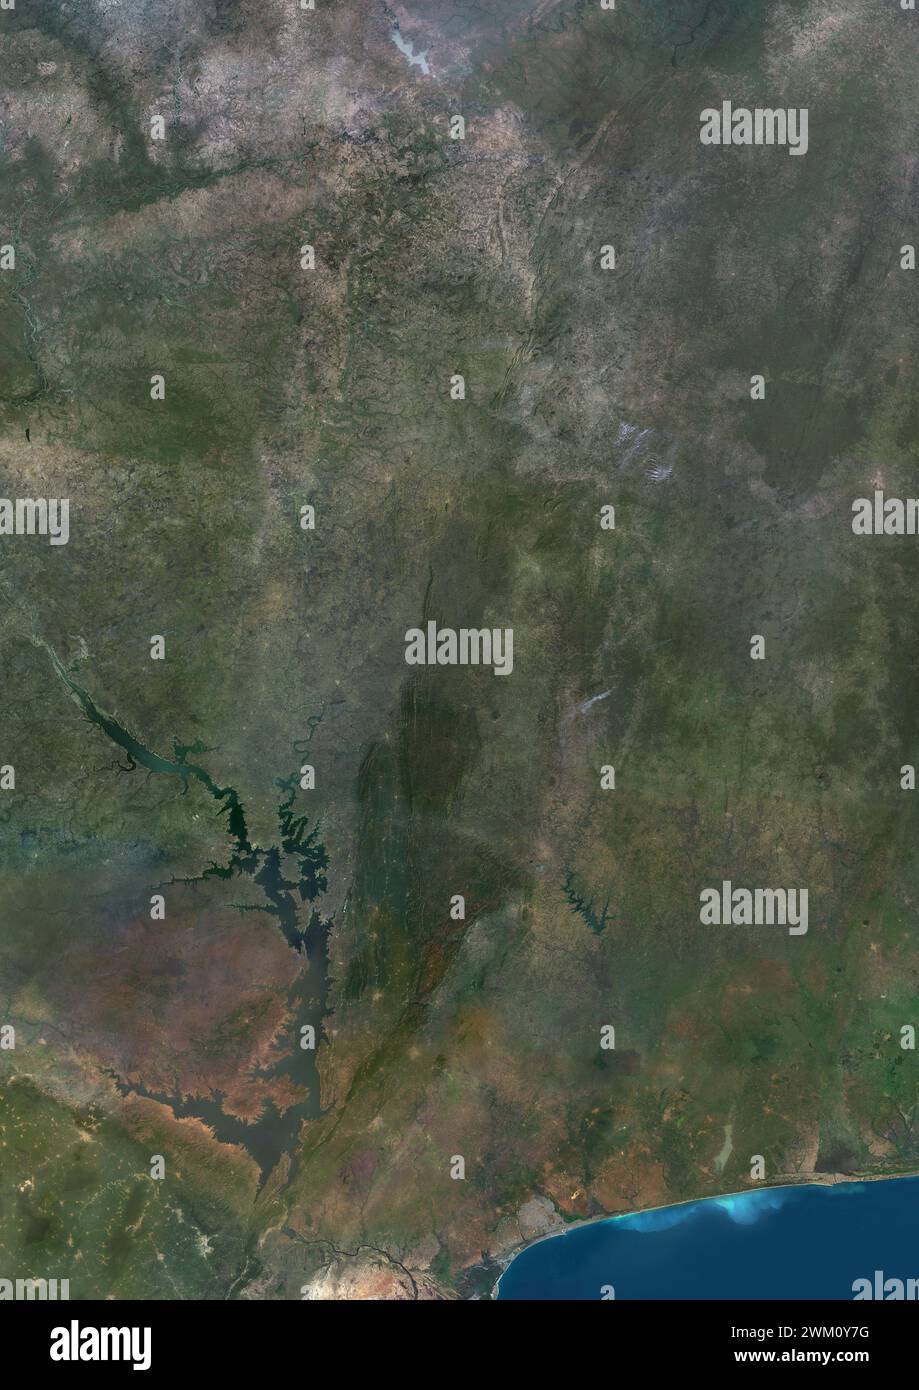 Immagine satellitare a colori del Togo e dei paesi limitrofi. Foto Stock